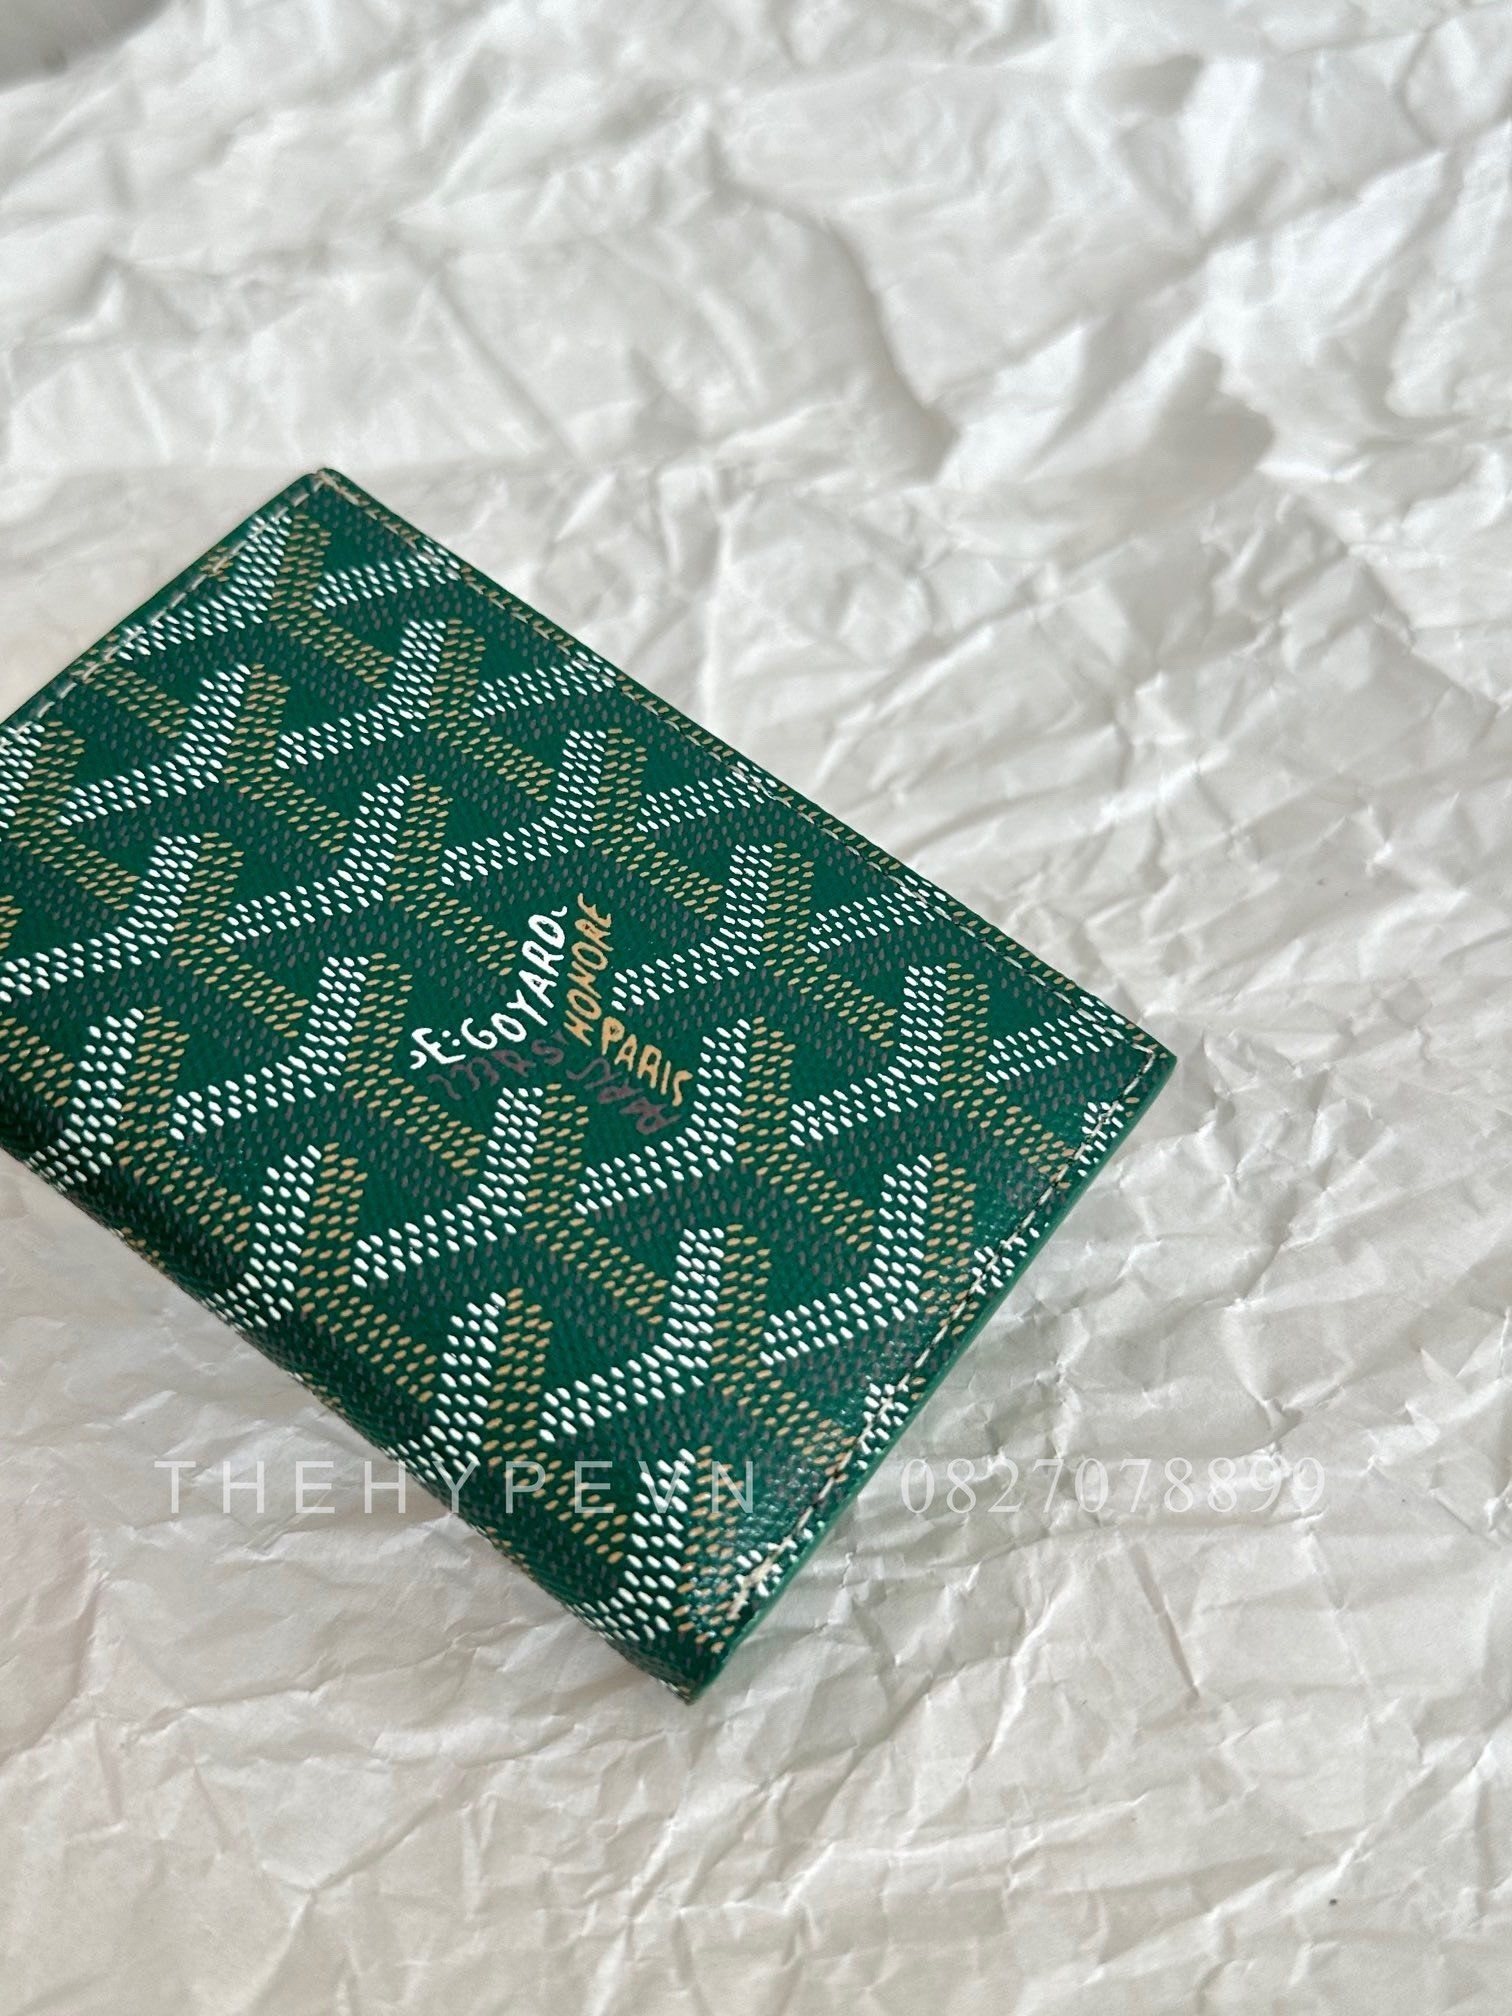  GOYARD CARD HOLDER - Saint-Marc Card Wallet (Green) [MIRROR QUALITY] 